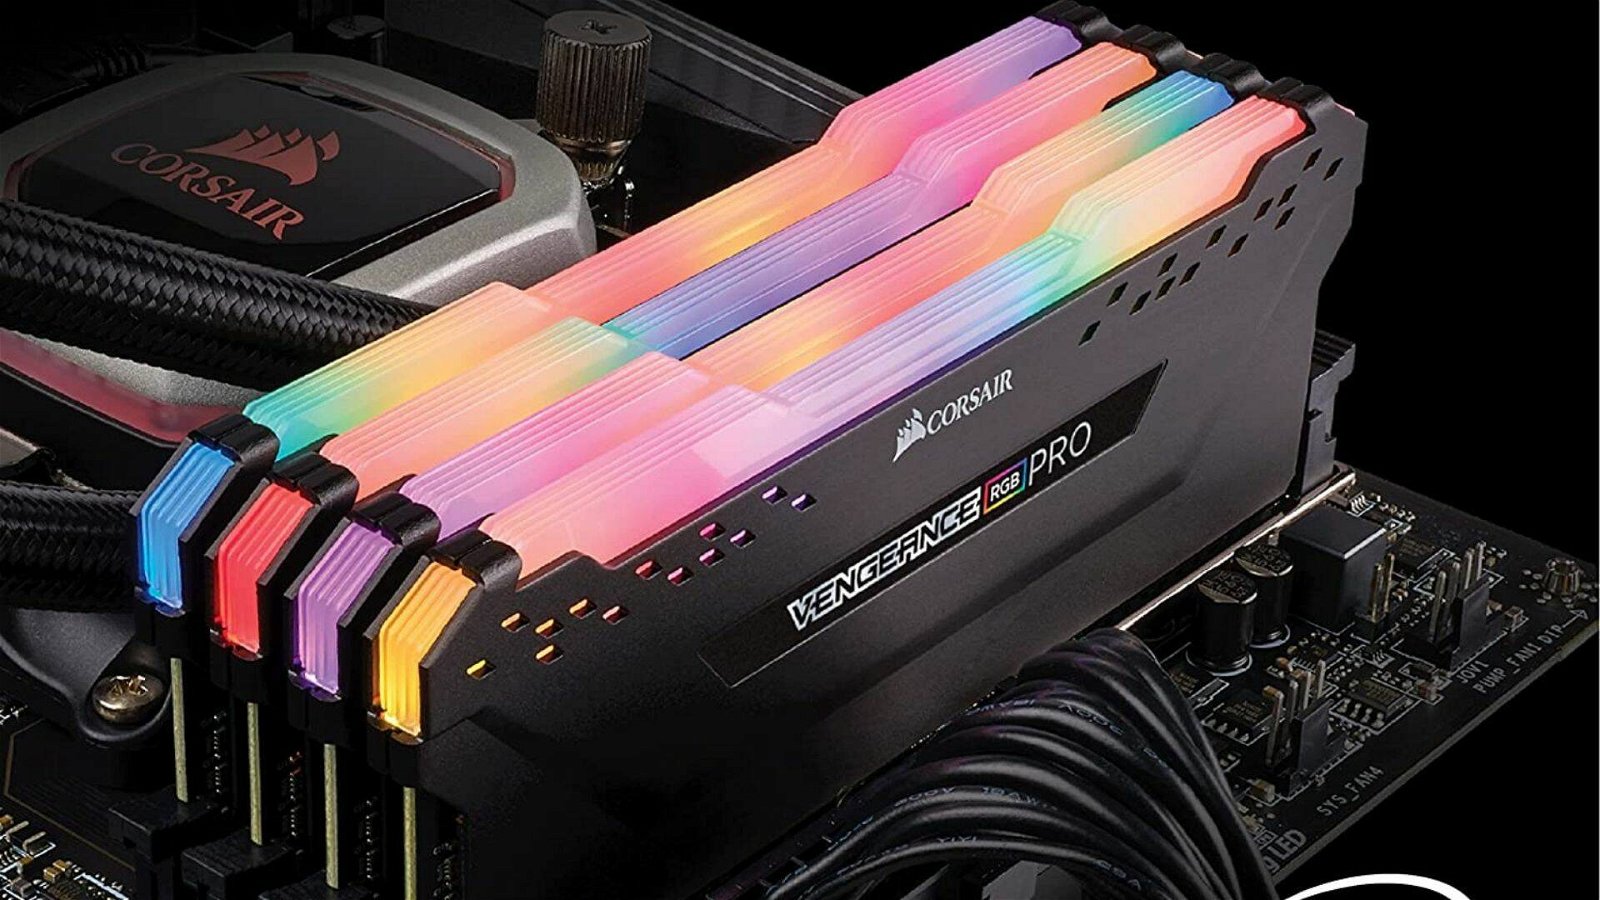 Immagine di Corsair: Kit RAM DDR4 da 32GB scontato del 15% su Amazon! Approfittane!